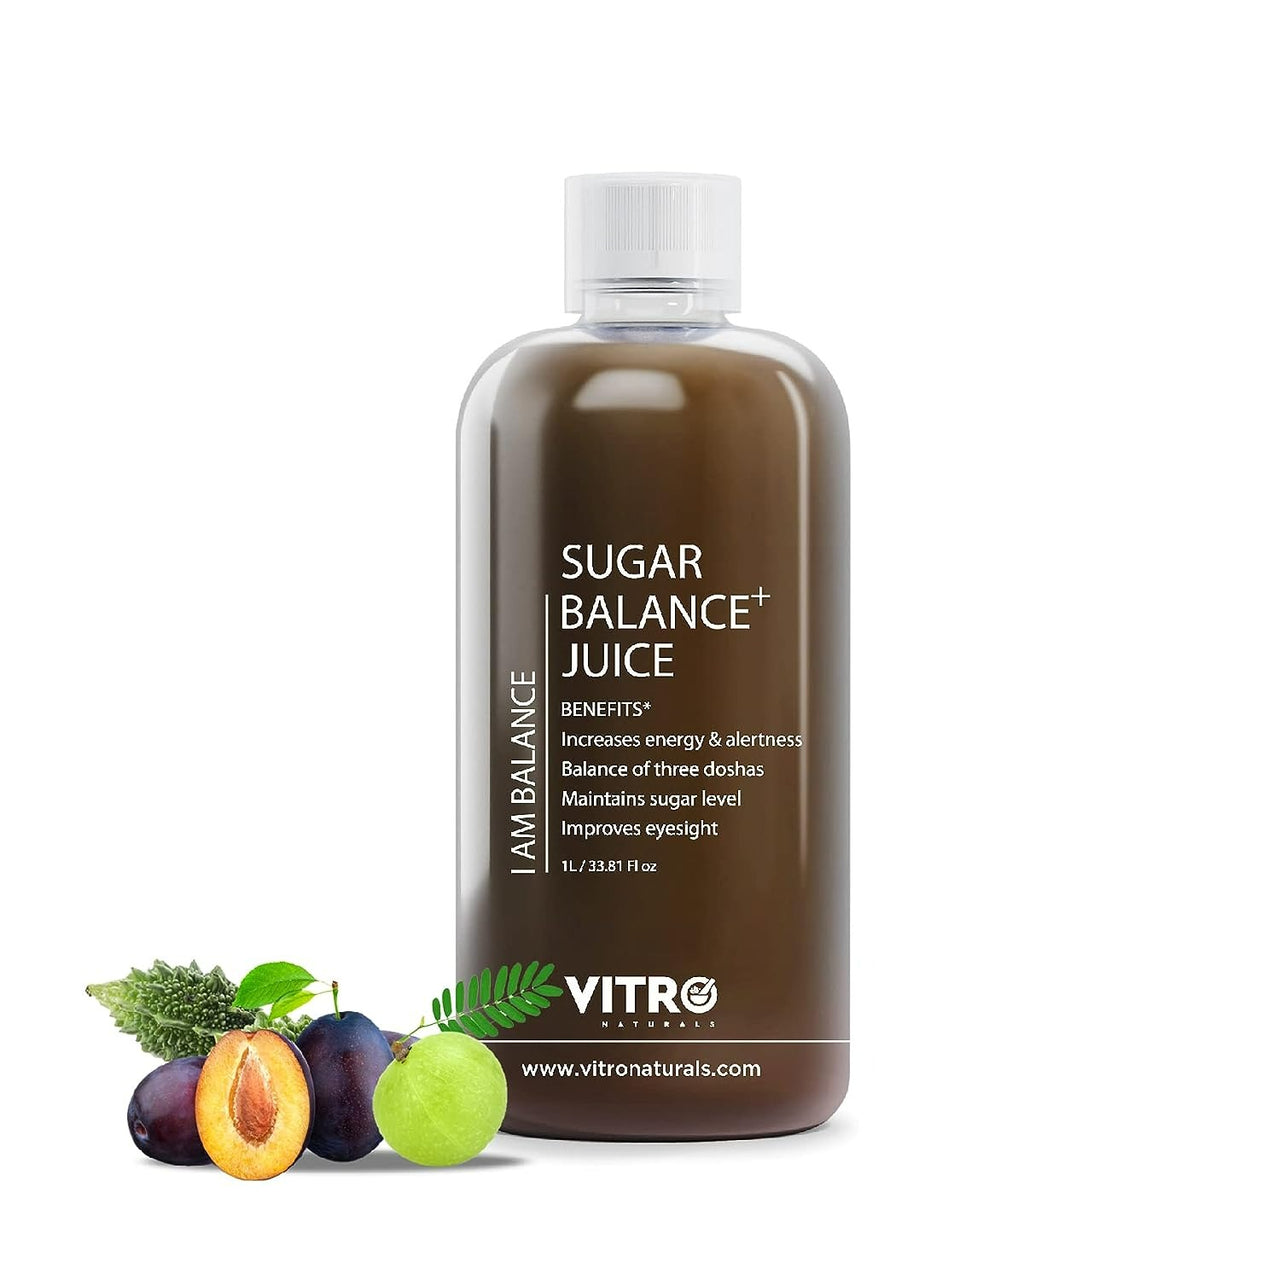 Vitro Naturals Certified Organic Sugar Balance Juice - Distacart